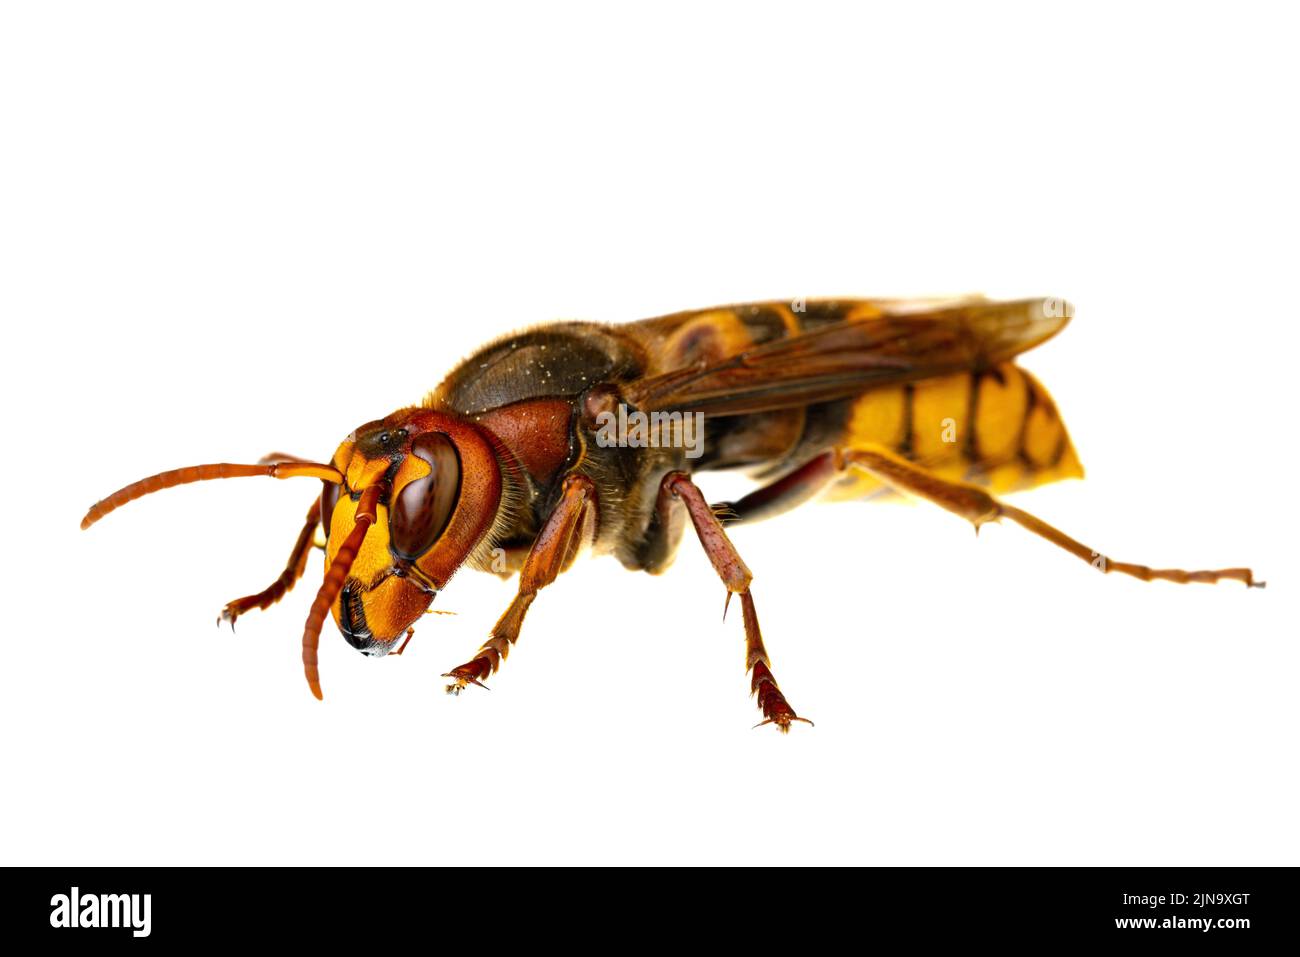 Insekten Europas - Wespen: Makro der europäischen Hornisse ( Vespa crabro - Europäische Hornisse ) isoliert auf weißem Hintergrund Stockfoto